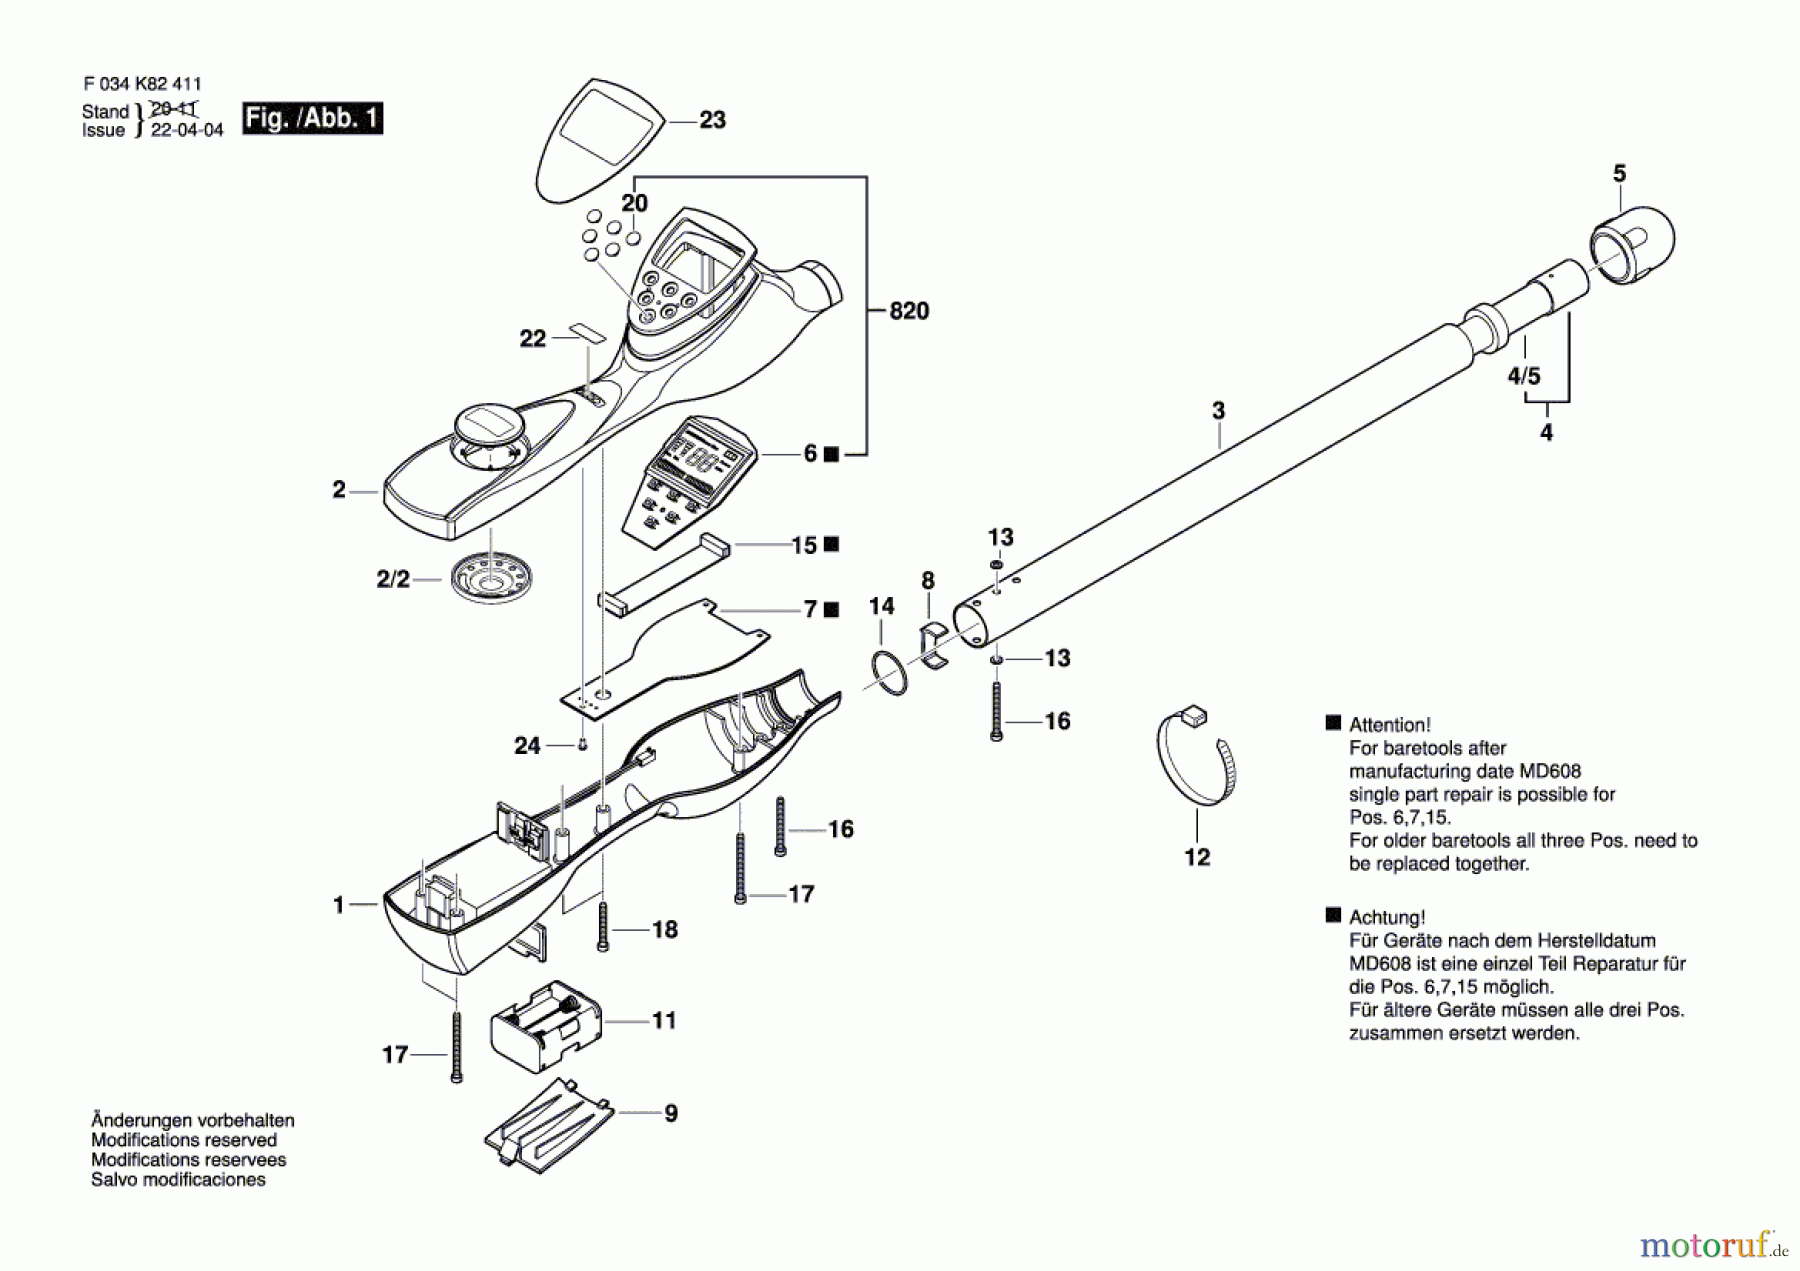  Bosch Werkzeug Metallortungsgerät MT202 Seite 1